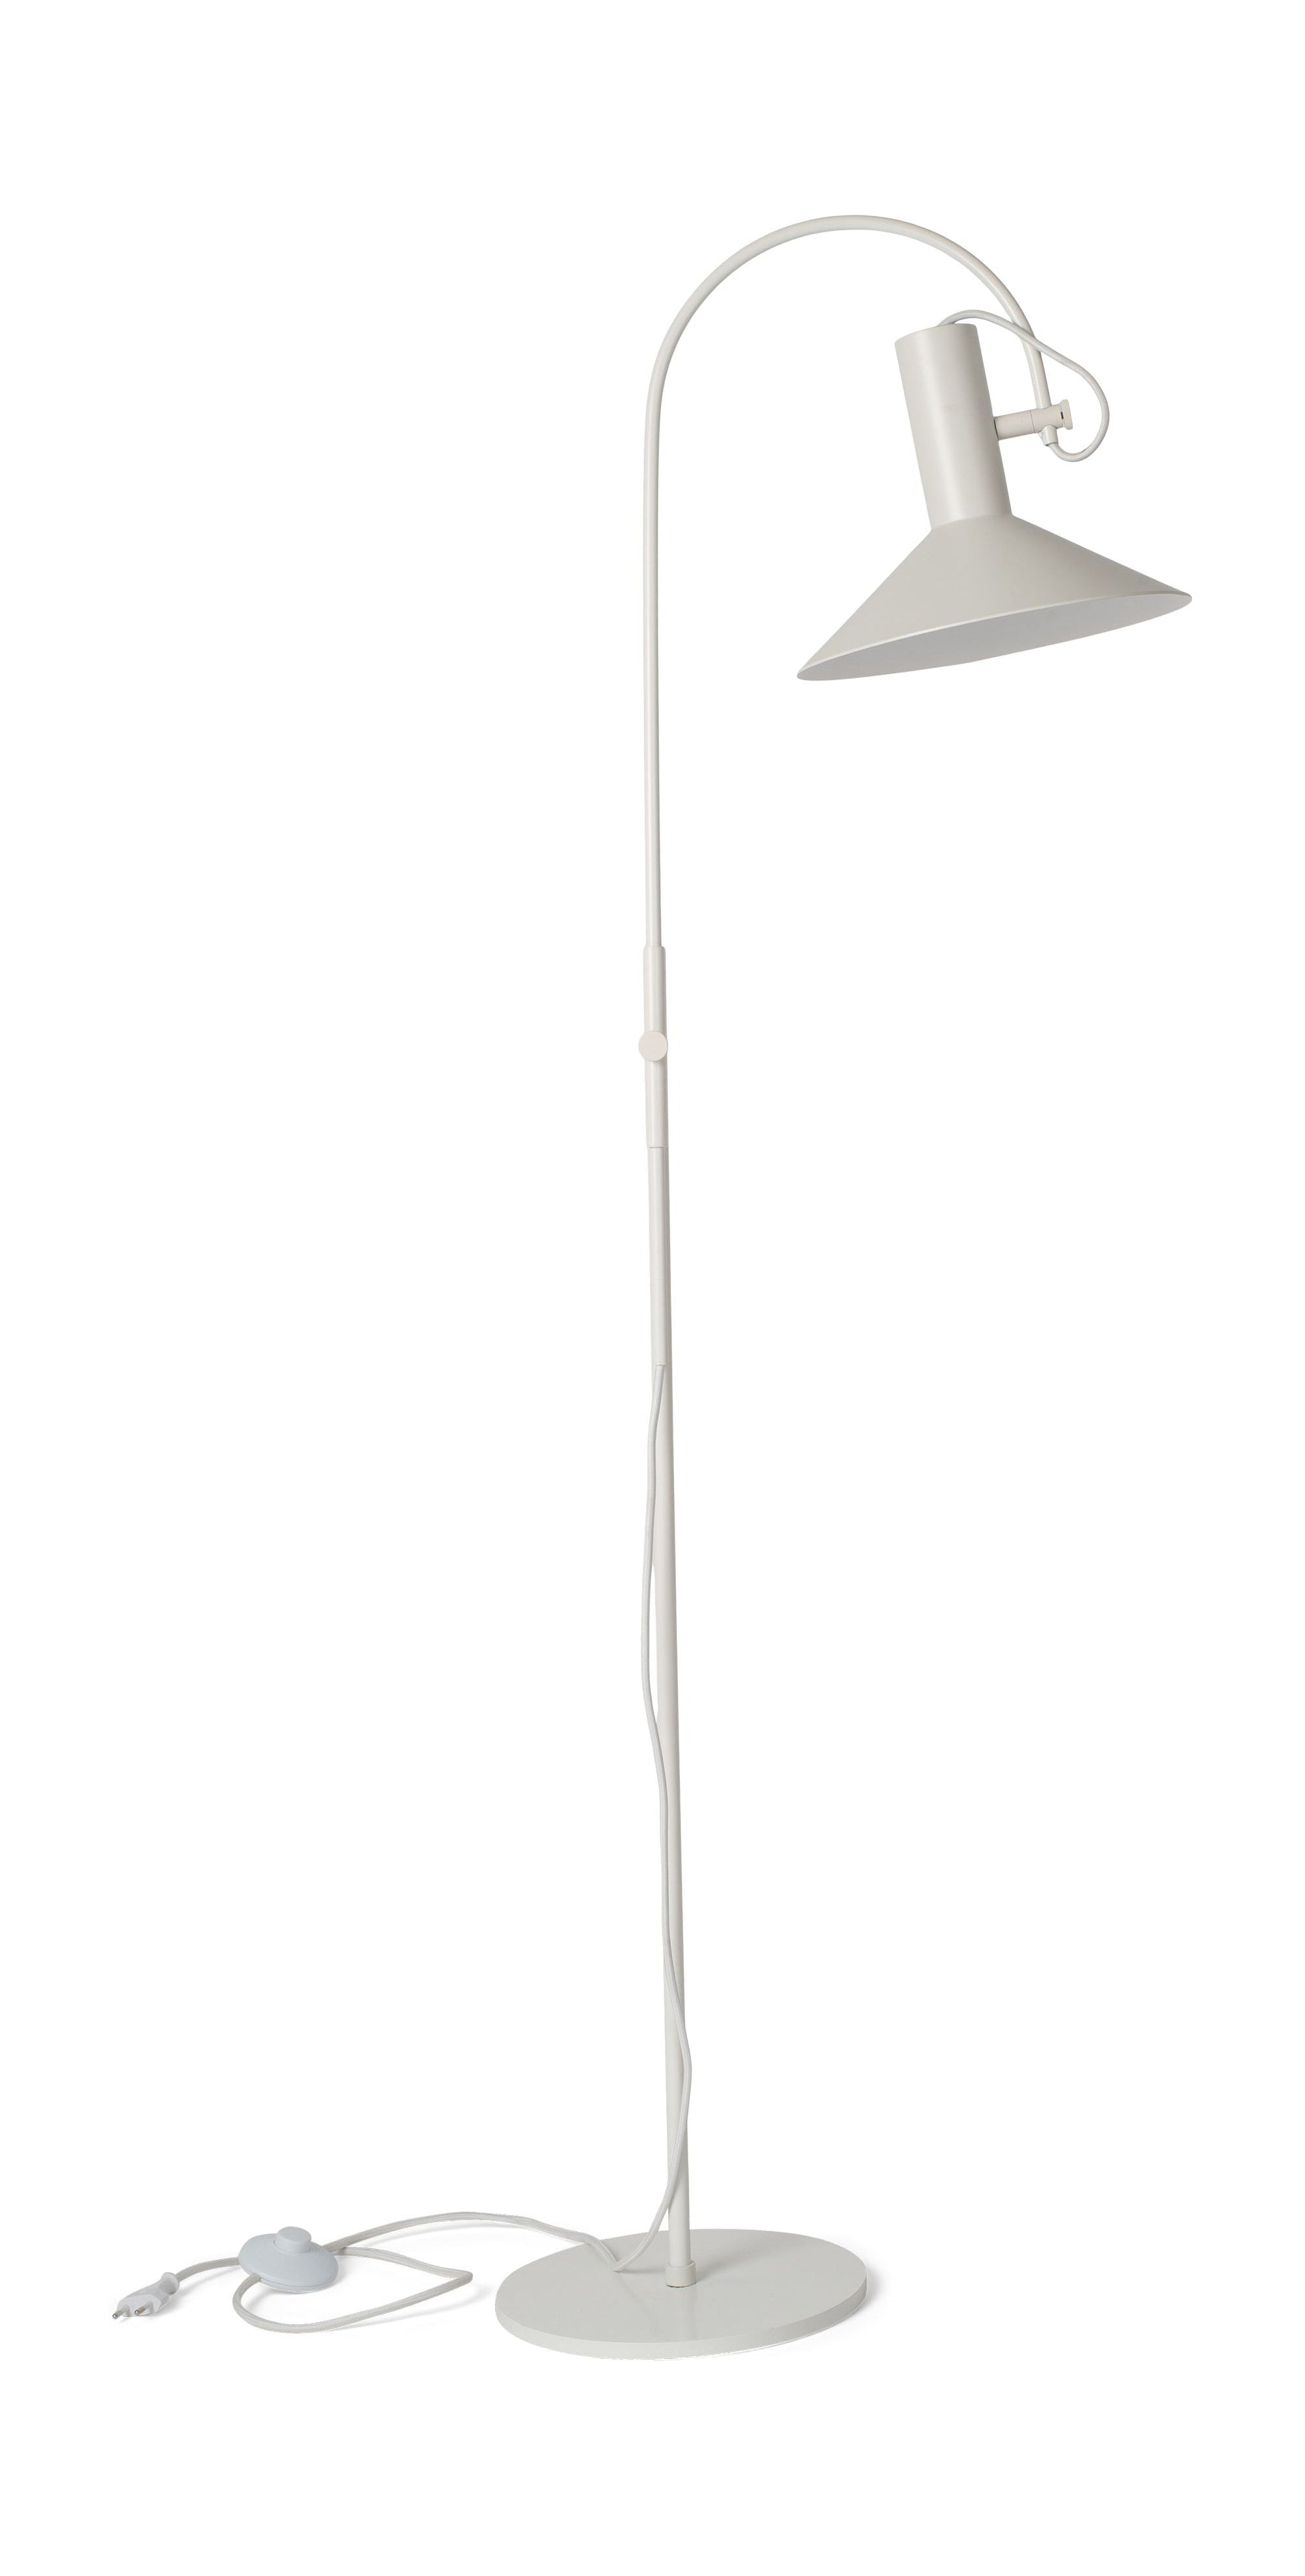 Jarní kodaňská podlahová lampa, bílá